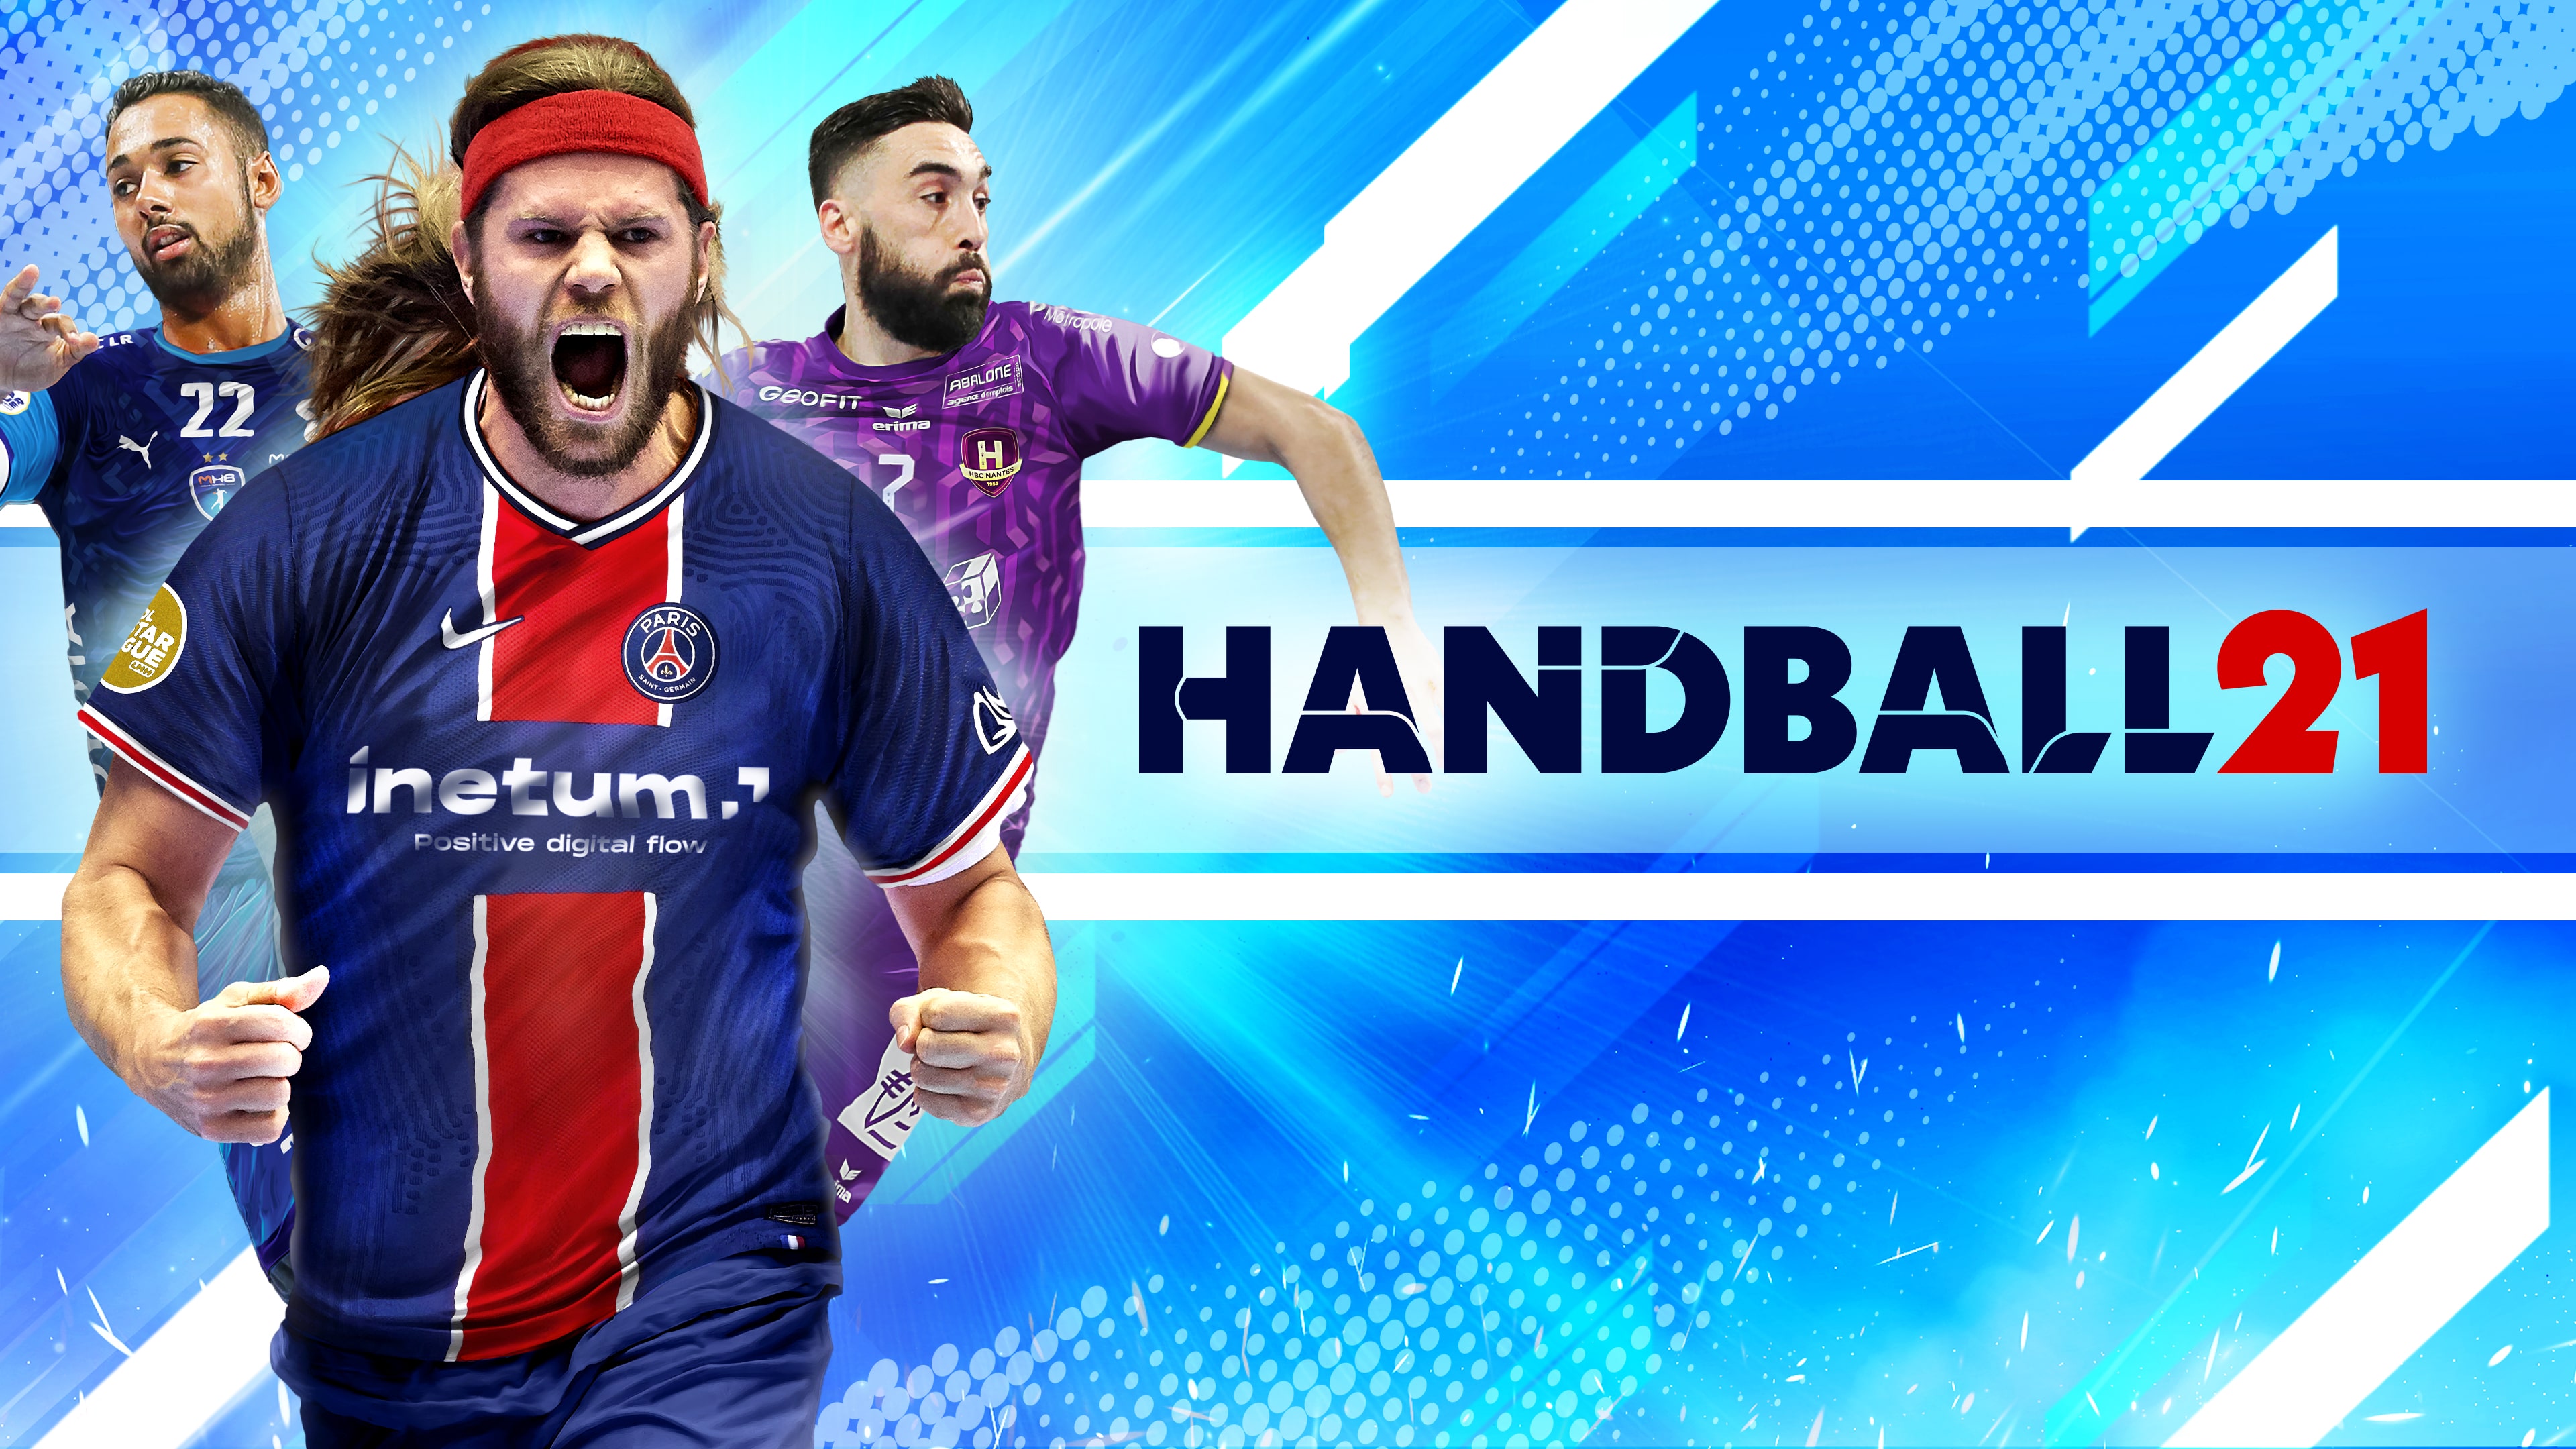 Handball (英文)